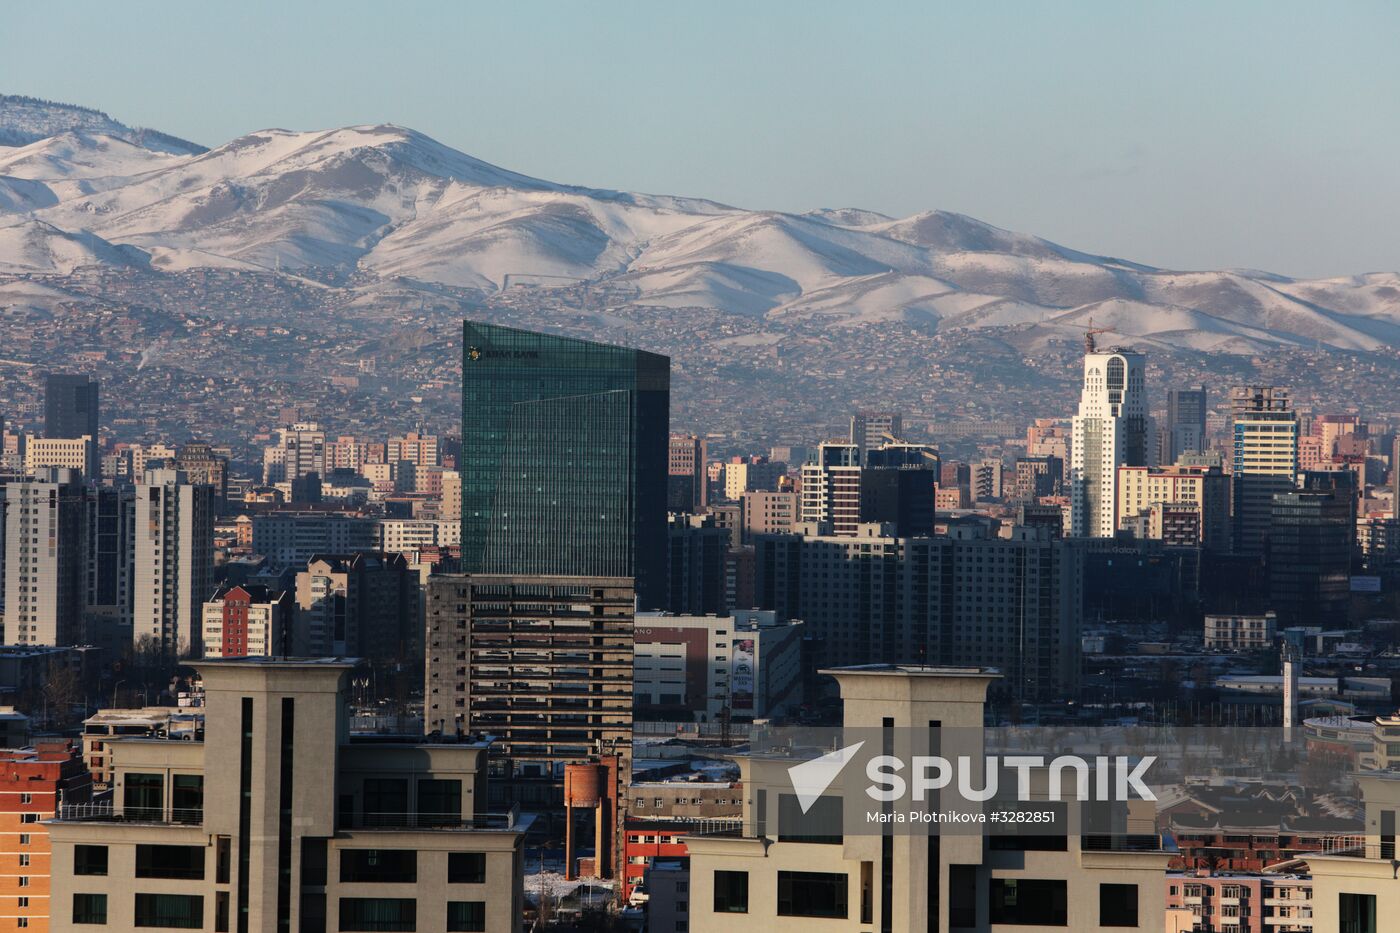 Cities of the world. Ulaanbaatar